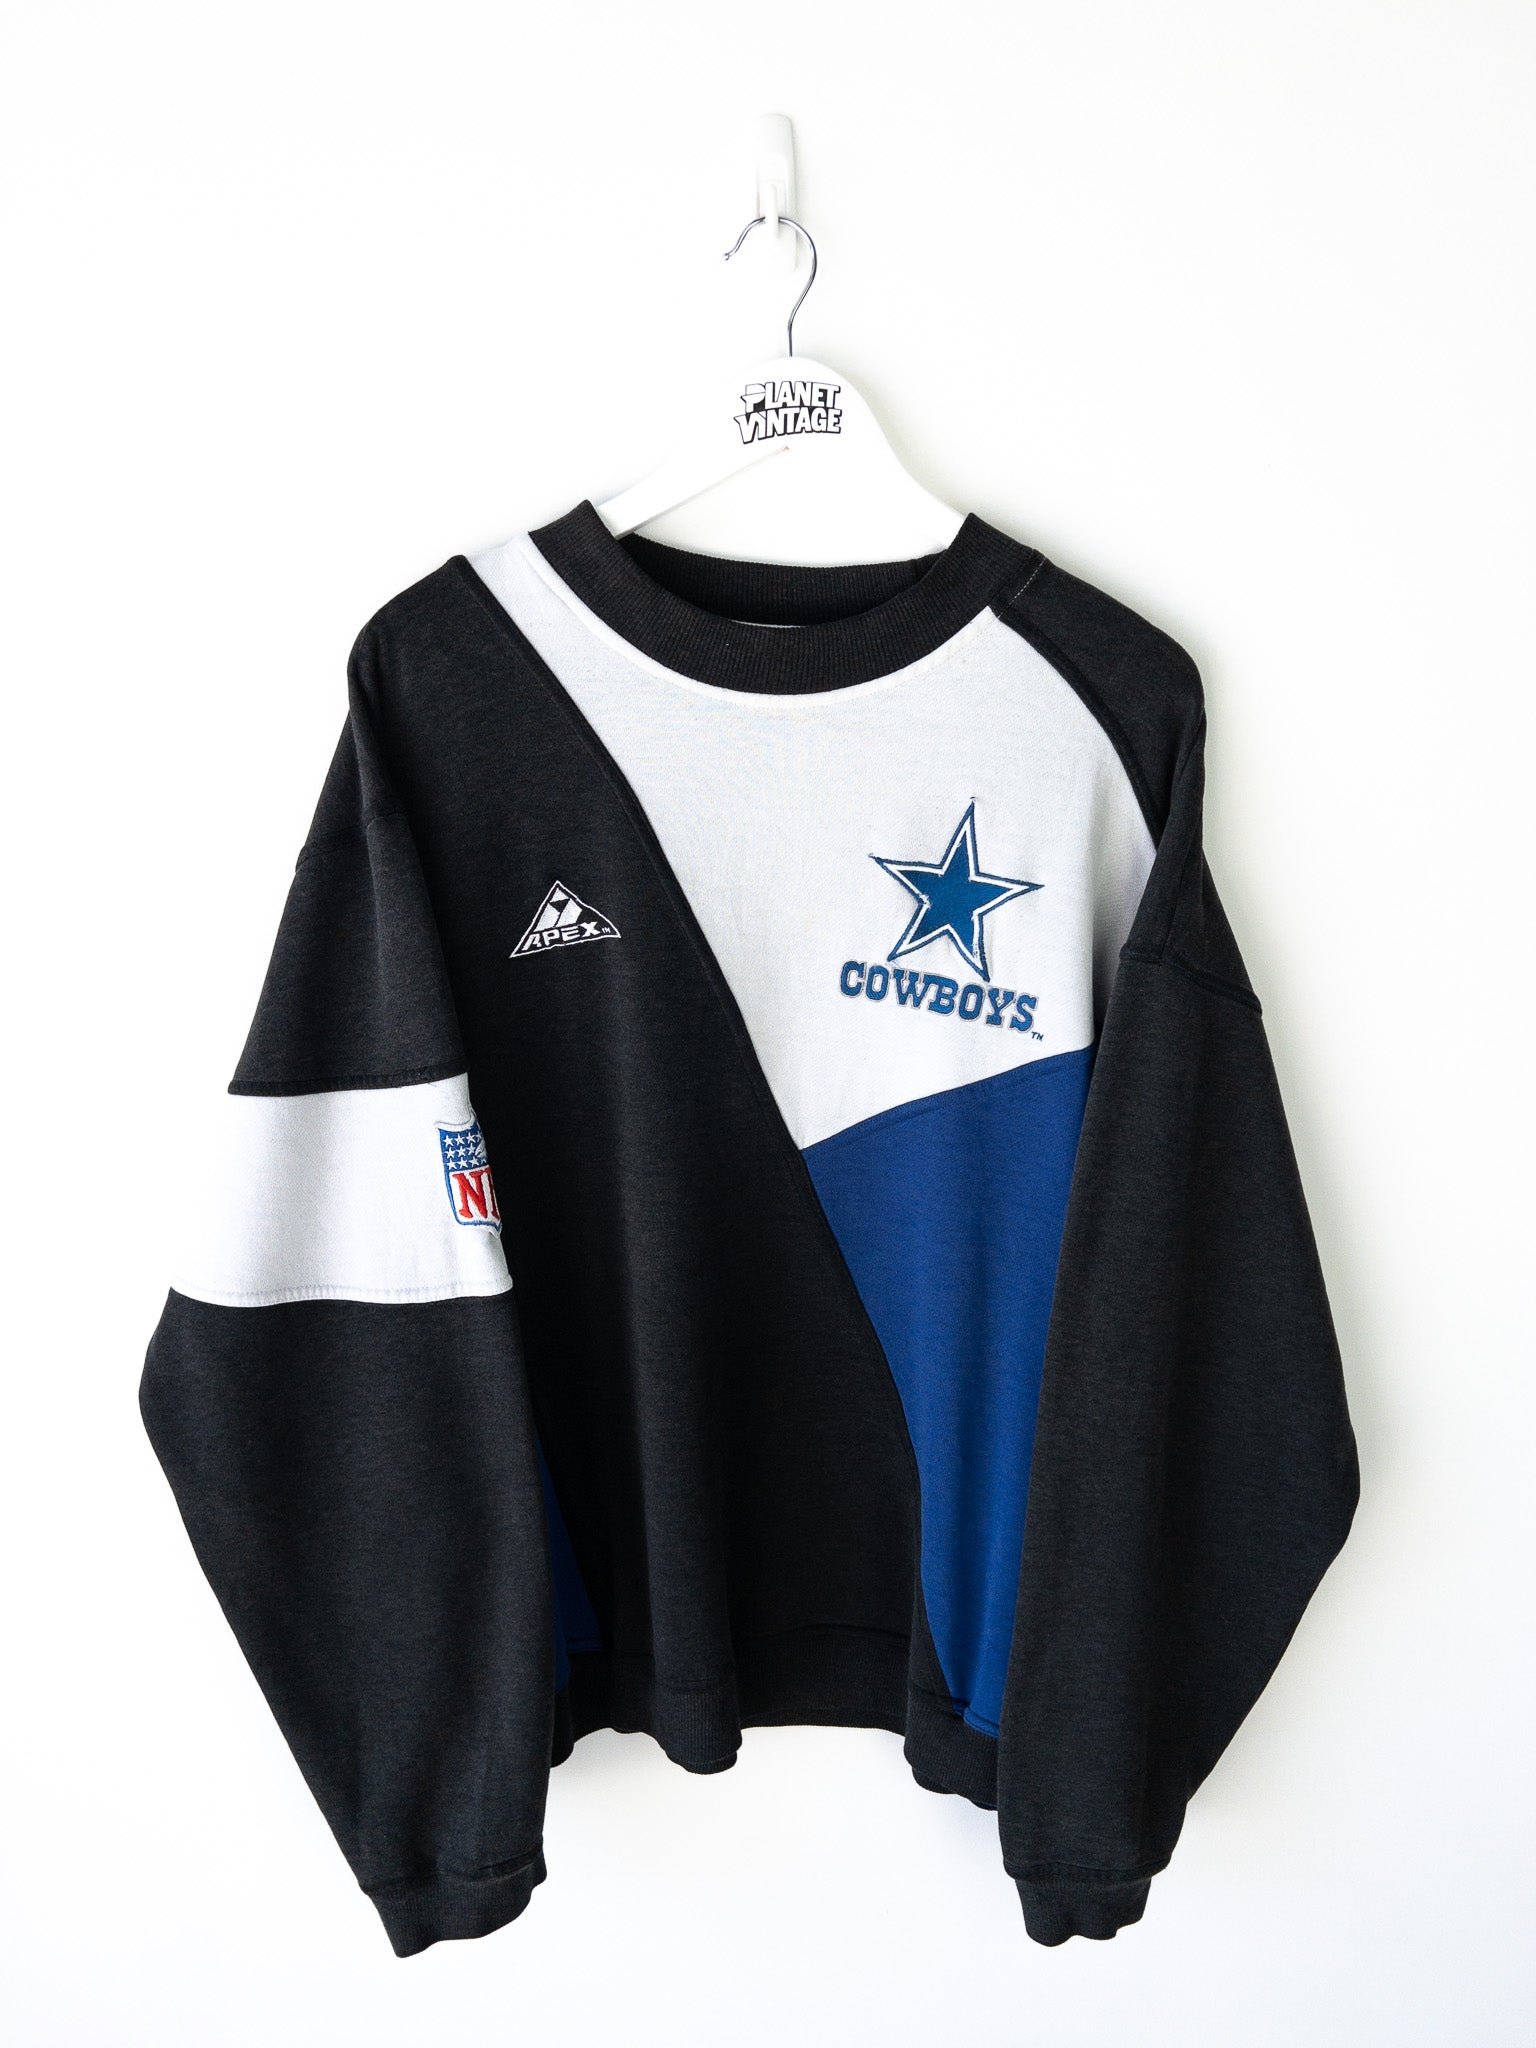 Vintage Dallas Cowboys Sweatshirt (XL)